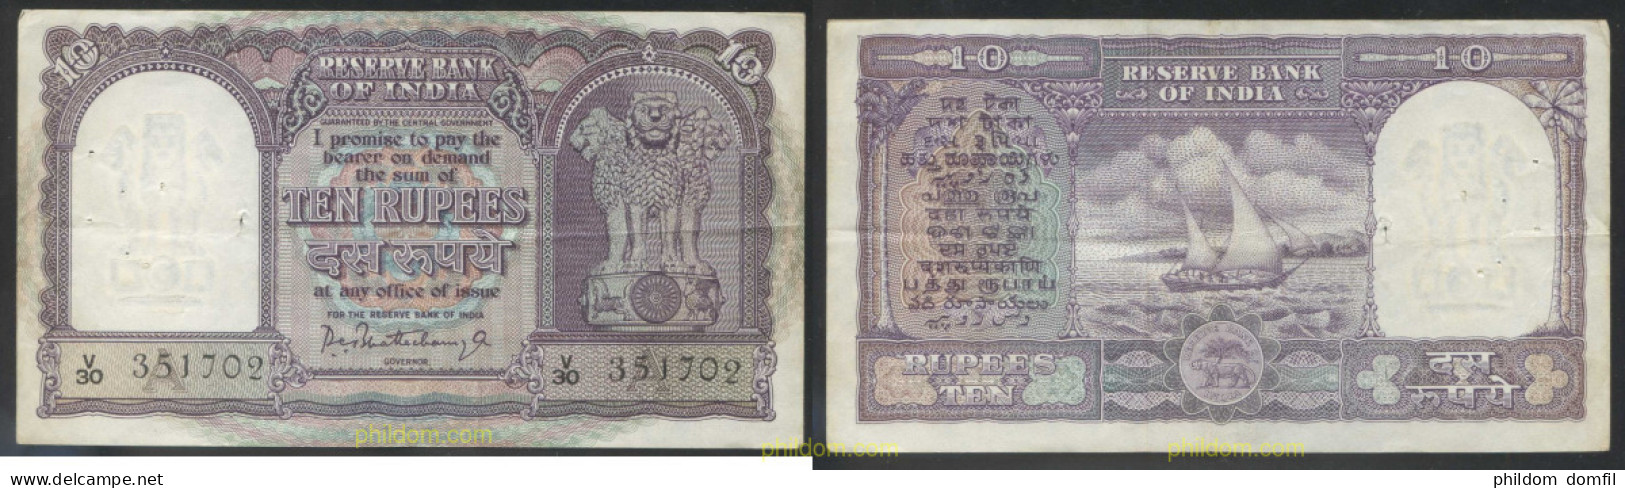 4610 INDIA 1967 INDIA 10 RUPEES 1967 - Inde